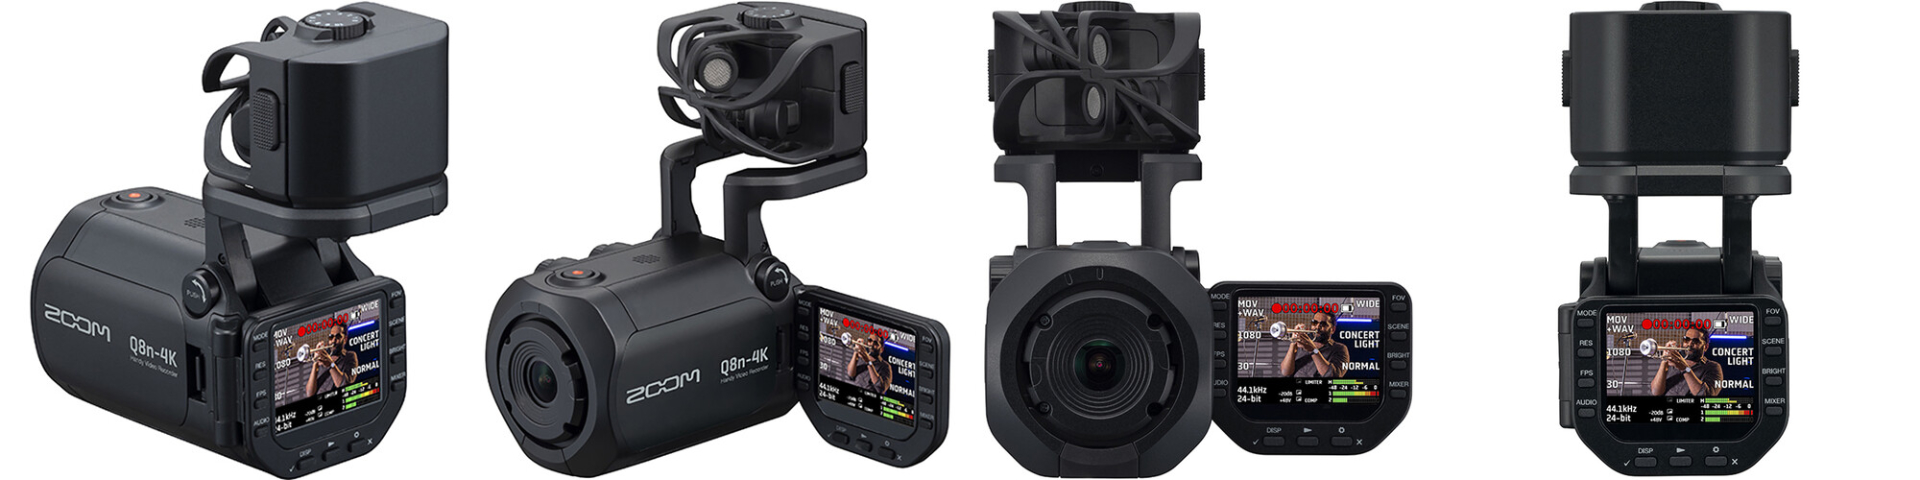 Zoomがハンディビデオレコーダー「Zoom Q8n-4K」を発売 | CineD